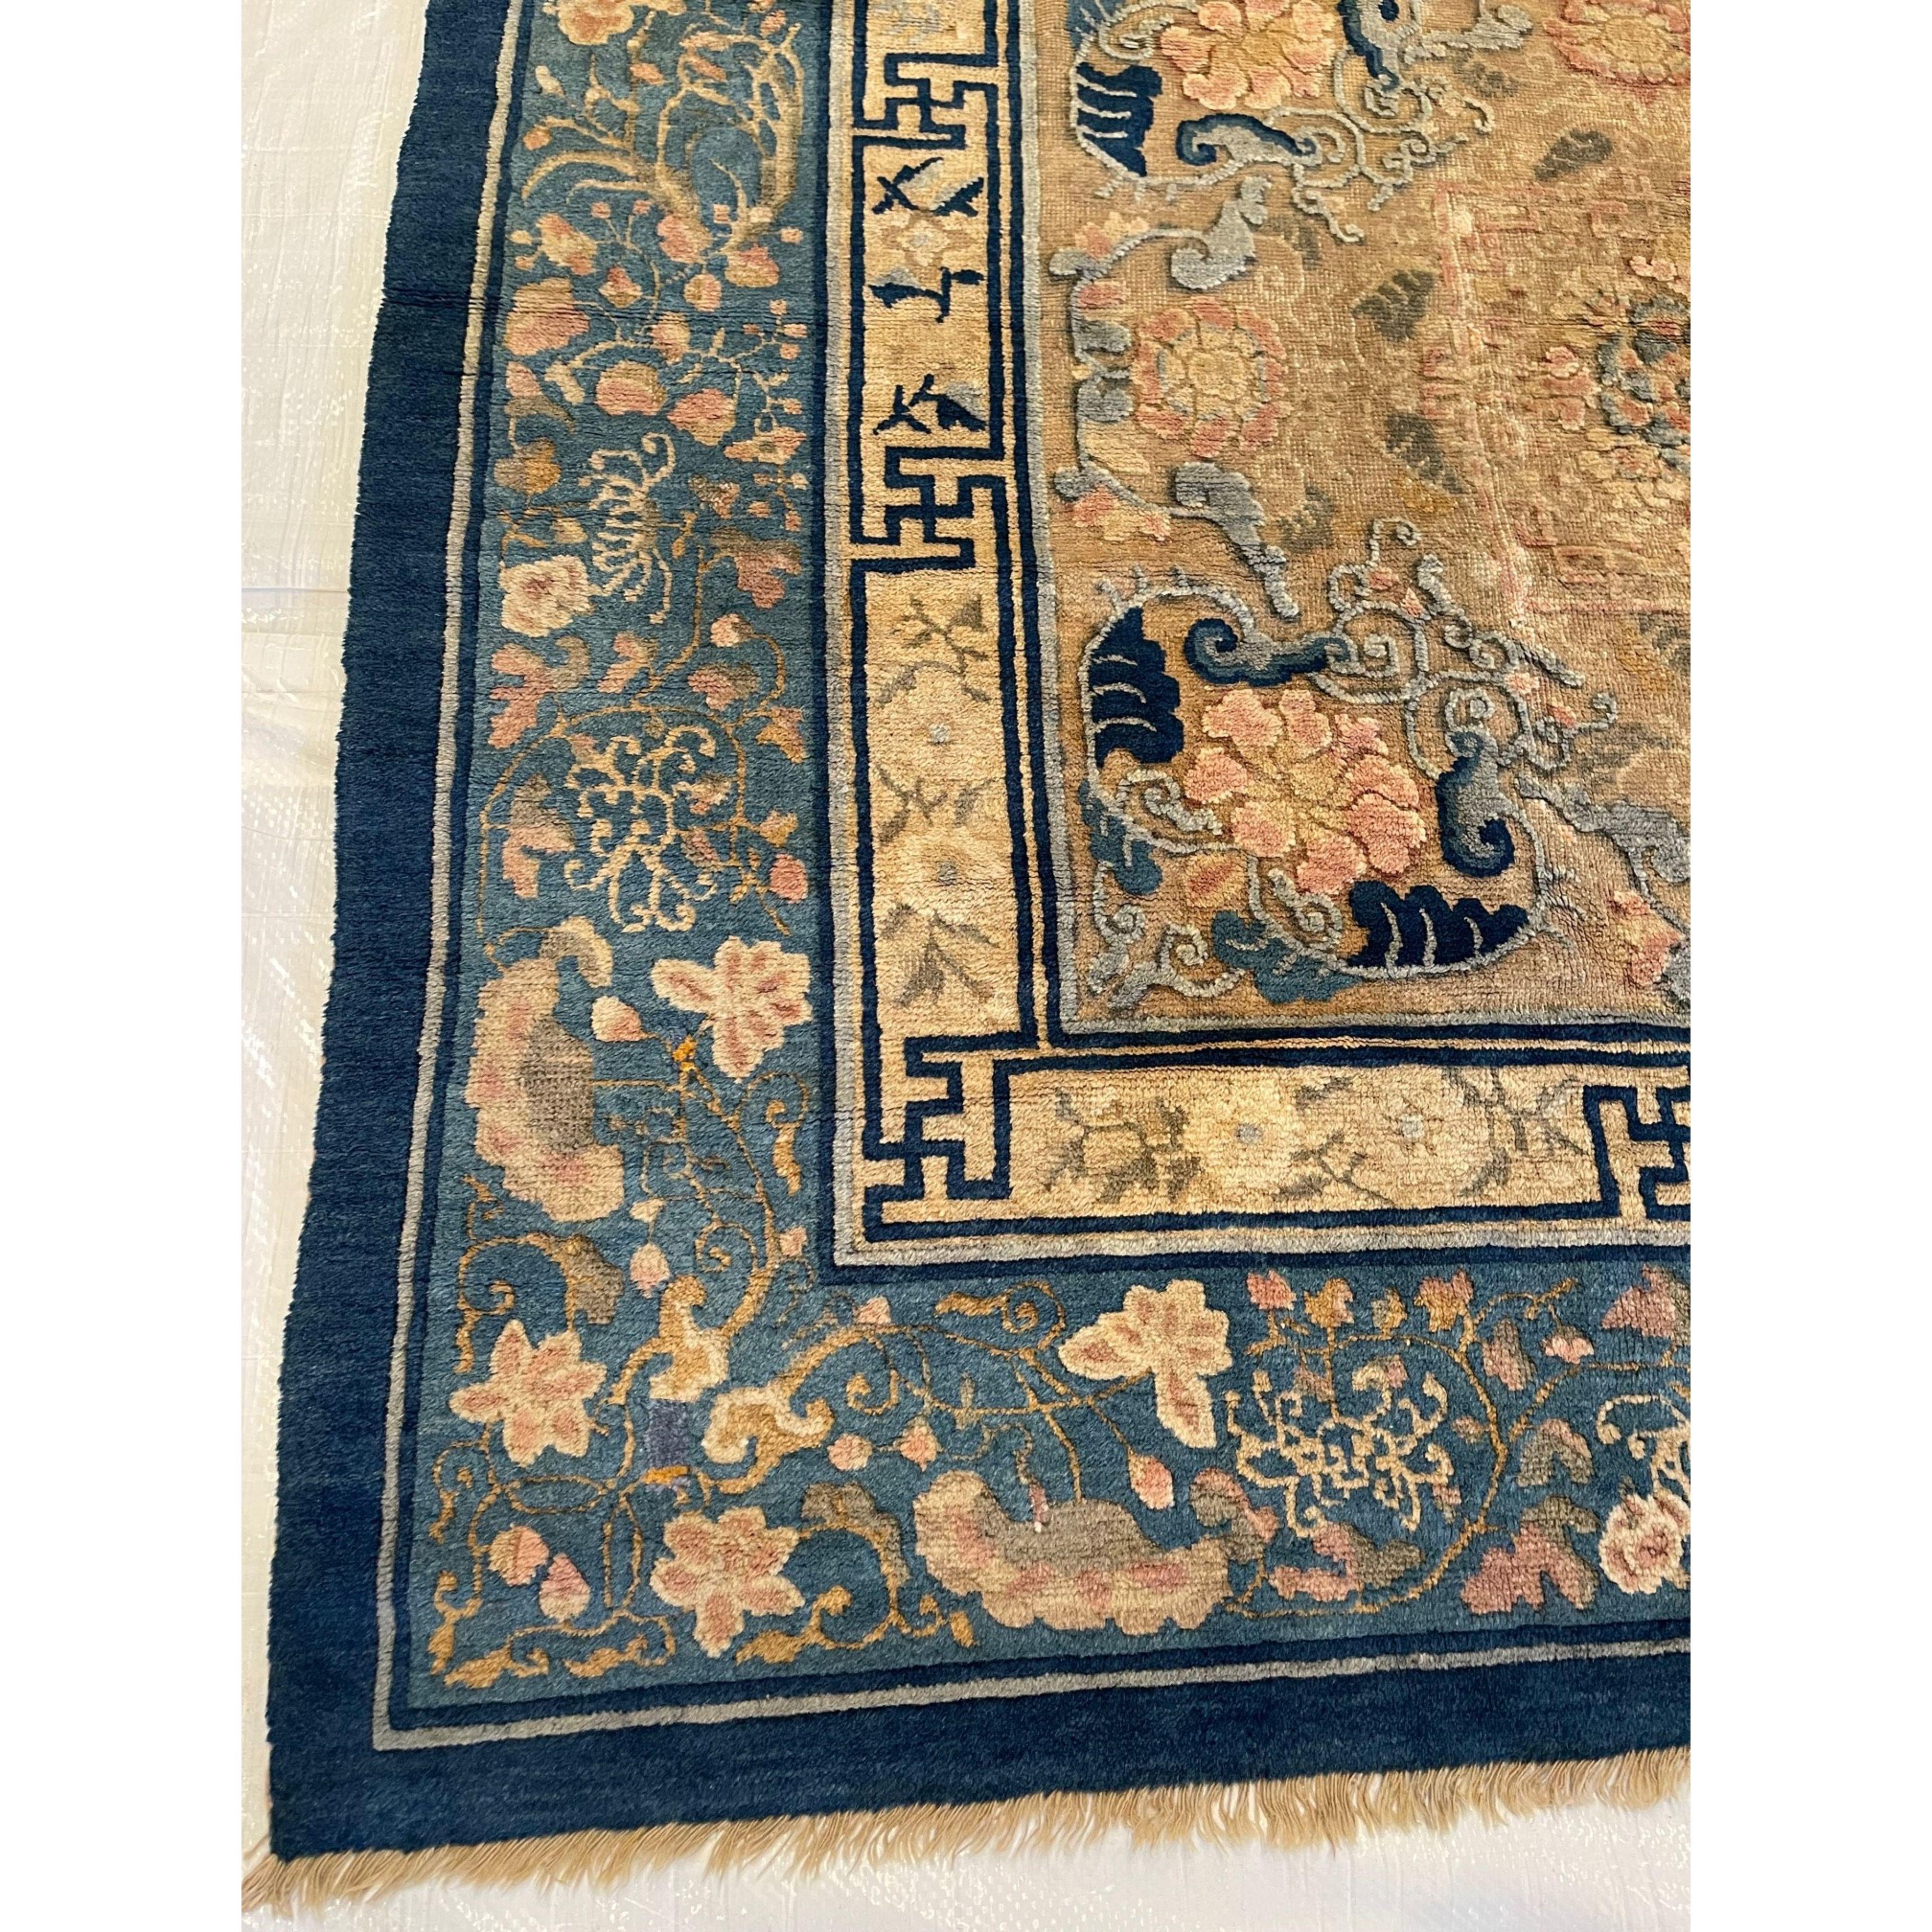 Les tapis chinois anciens, contrairement à la plupart des productions de tapis anciens, étaient tissés presque exclusivement pour la consommation intérieure. Comme ils étaient pour la plupart à l'abri des influences européennes et occidentales, cela